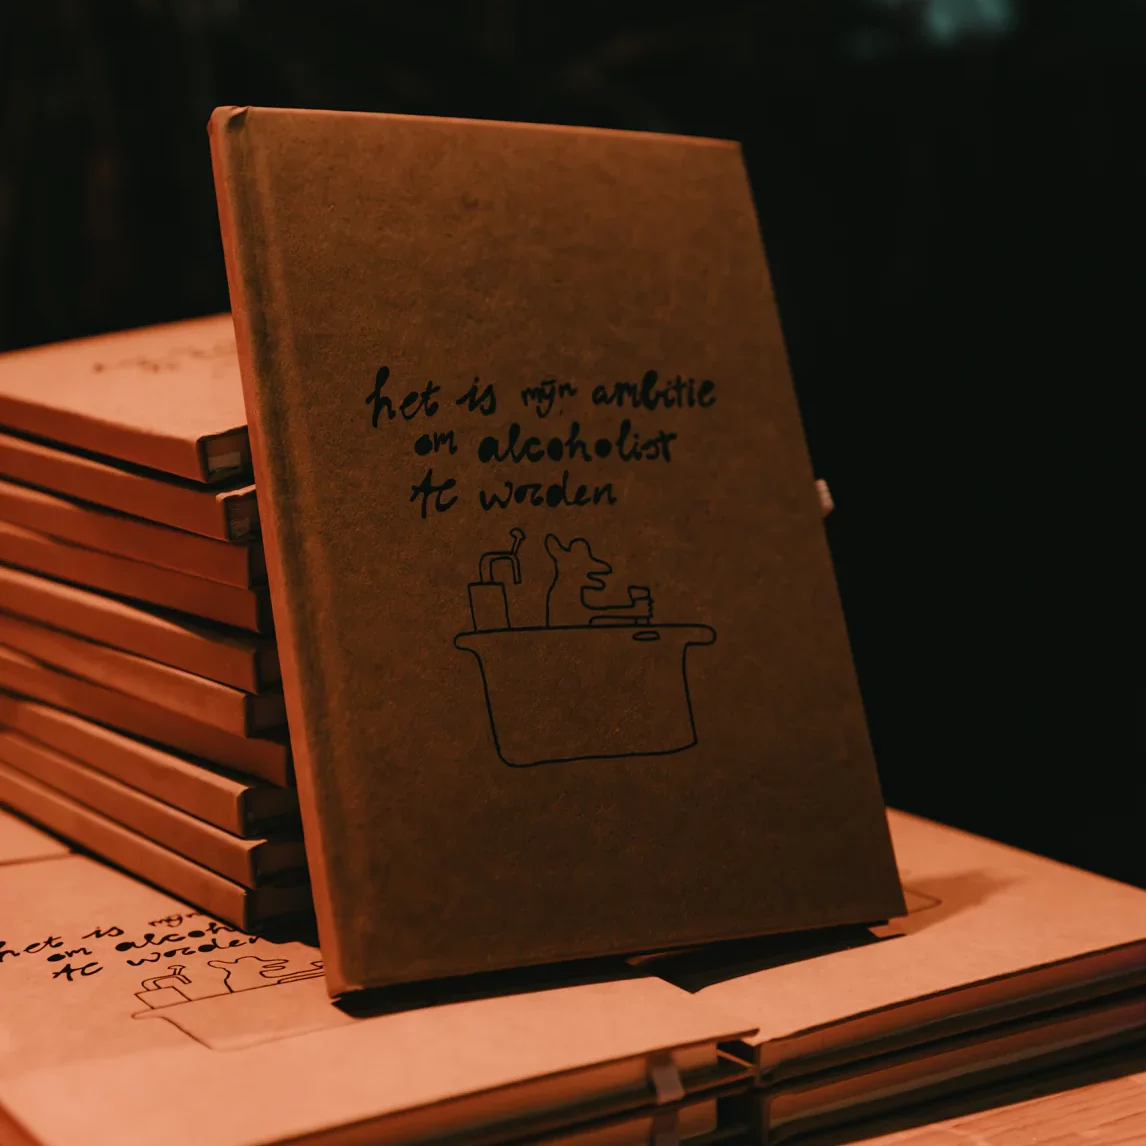 Notebook “Het is mijn ambitie om alcoholist te worden”